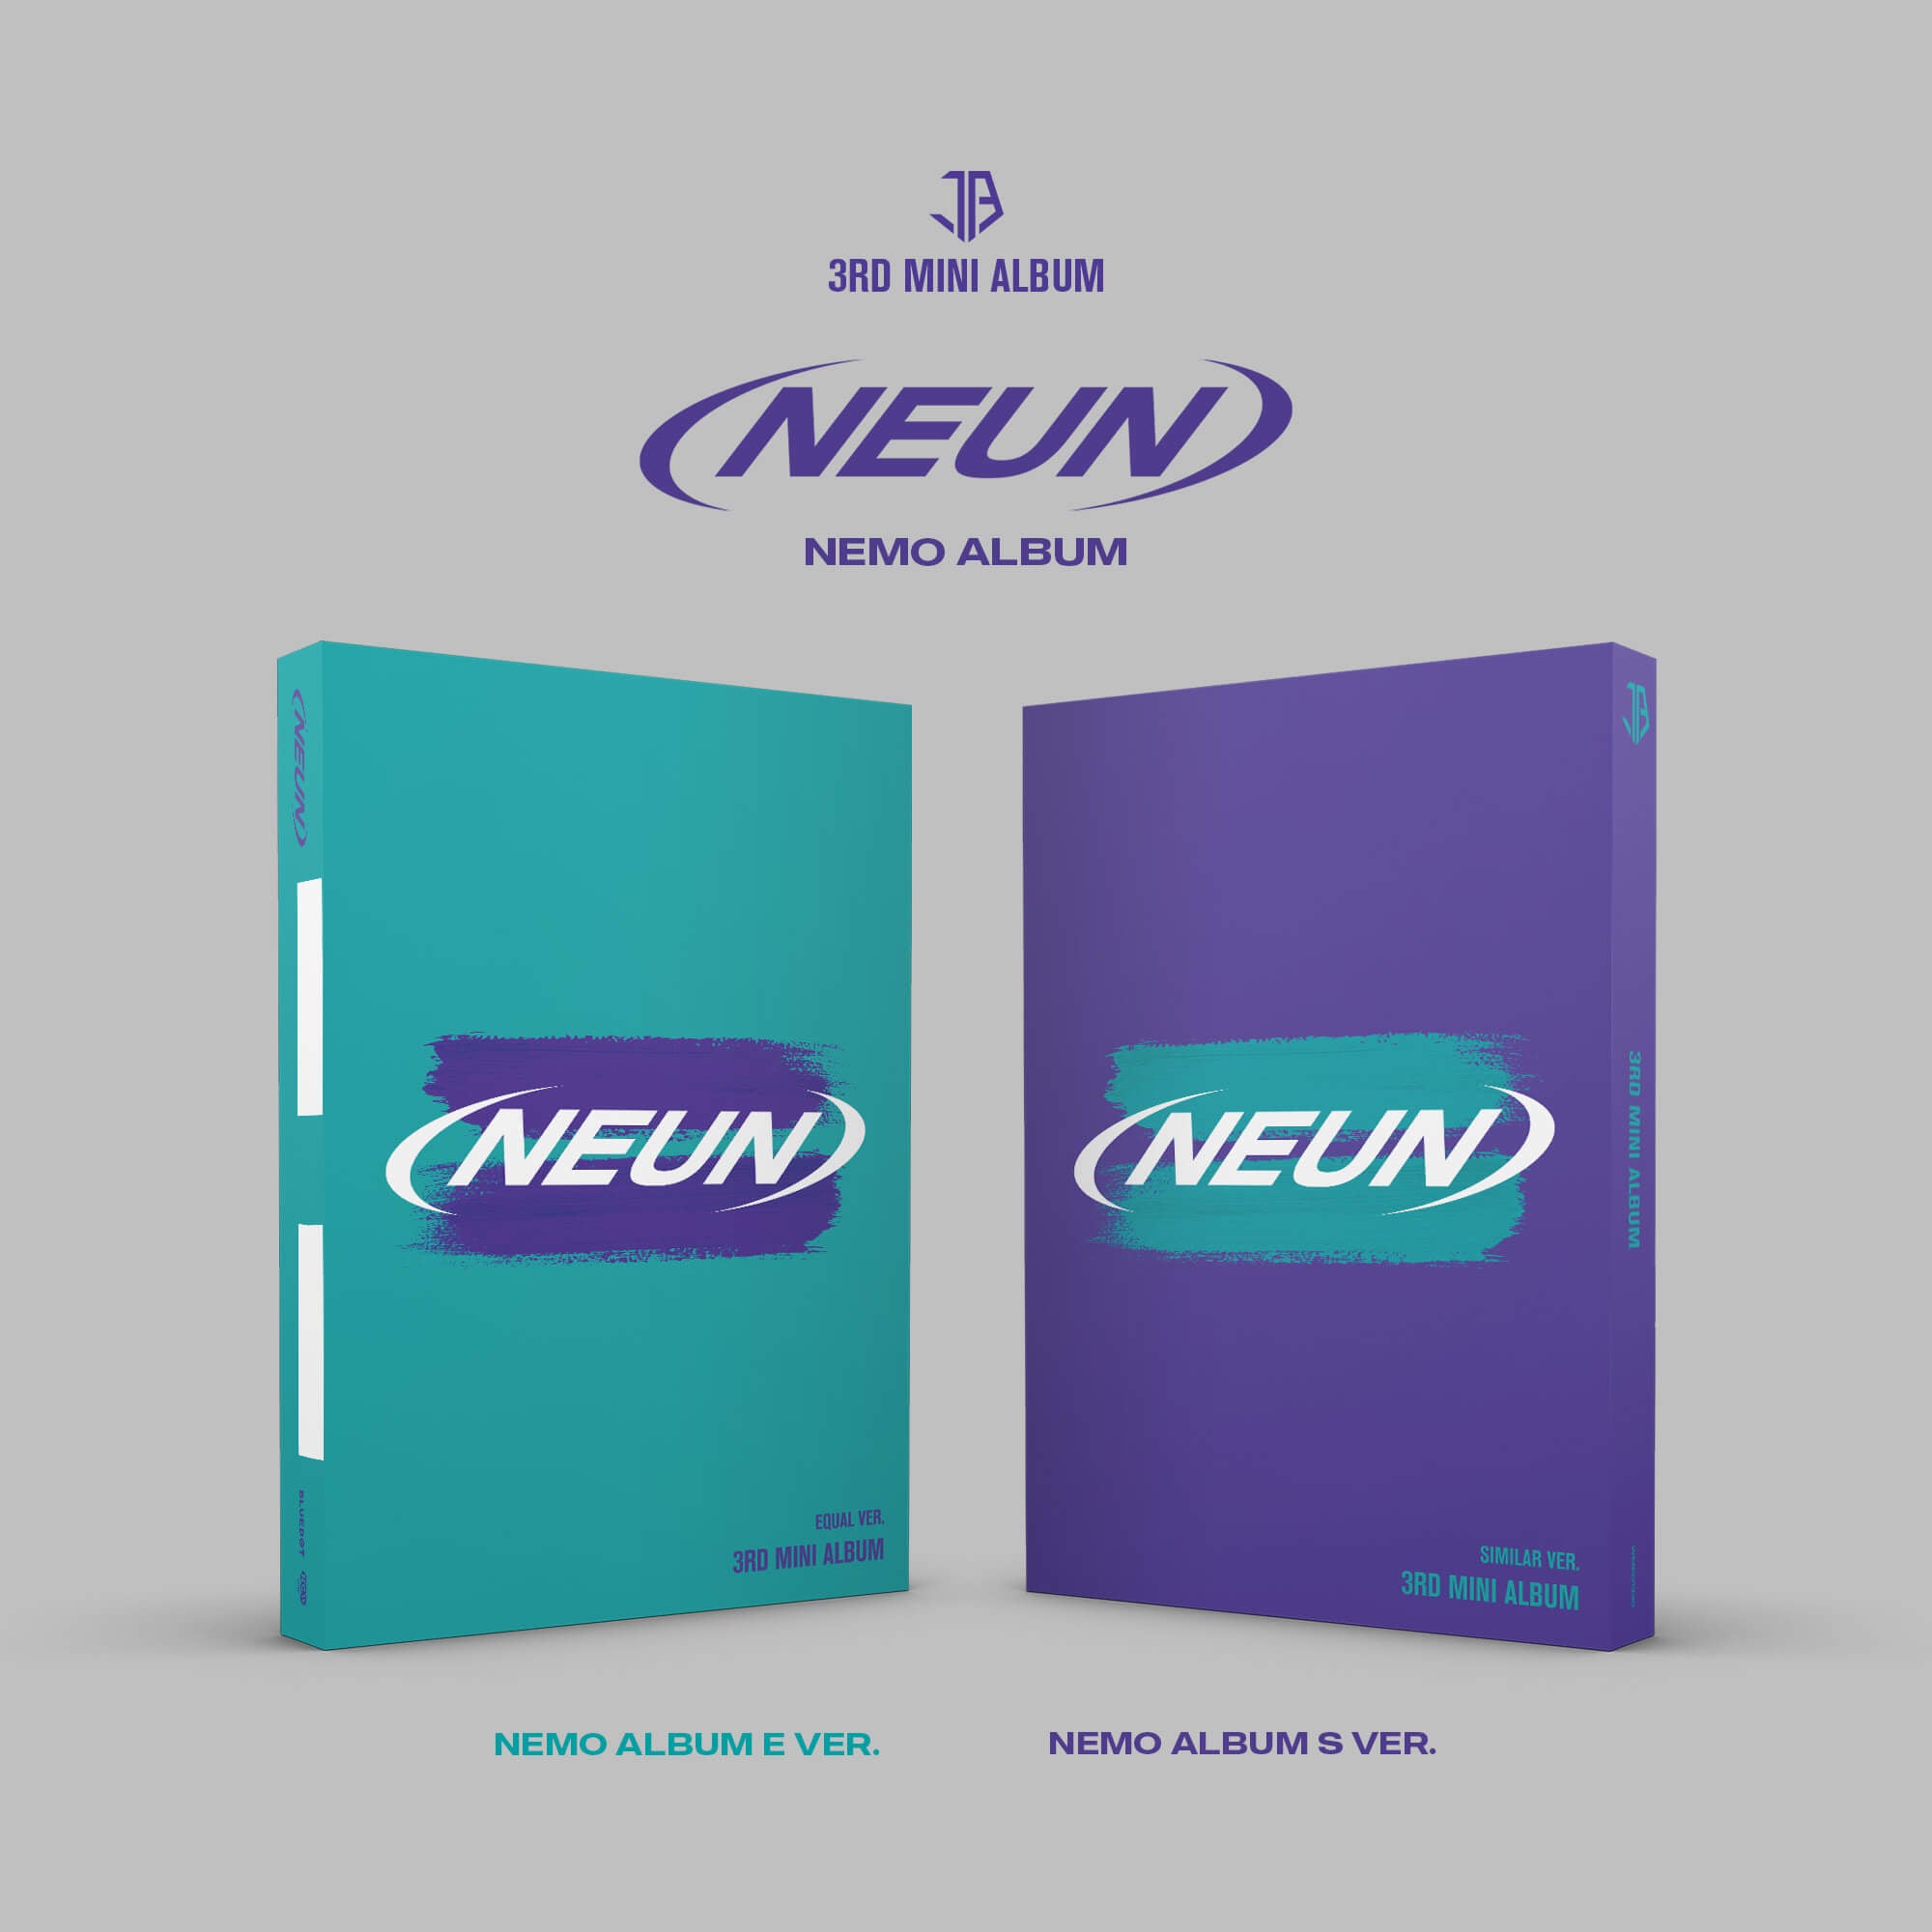 JUST B 3rd Mini Album = (NEUN) (Nemo Album) - E / S Version